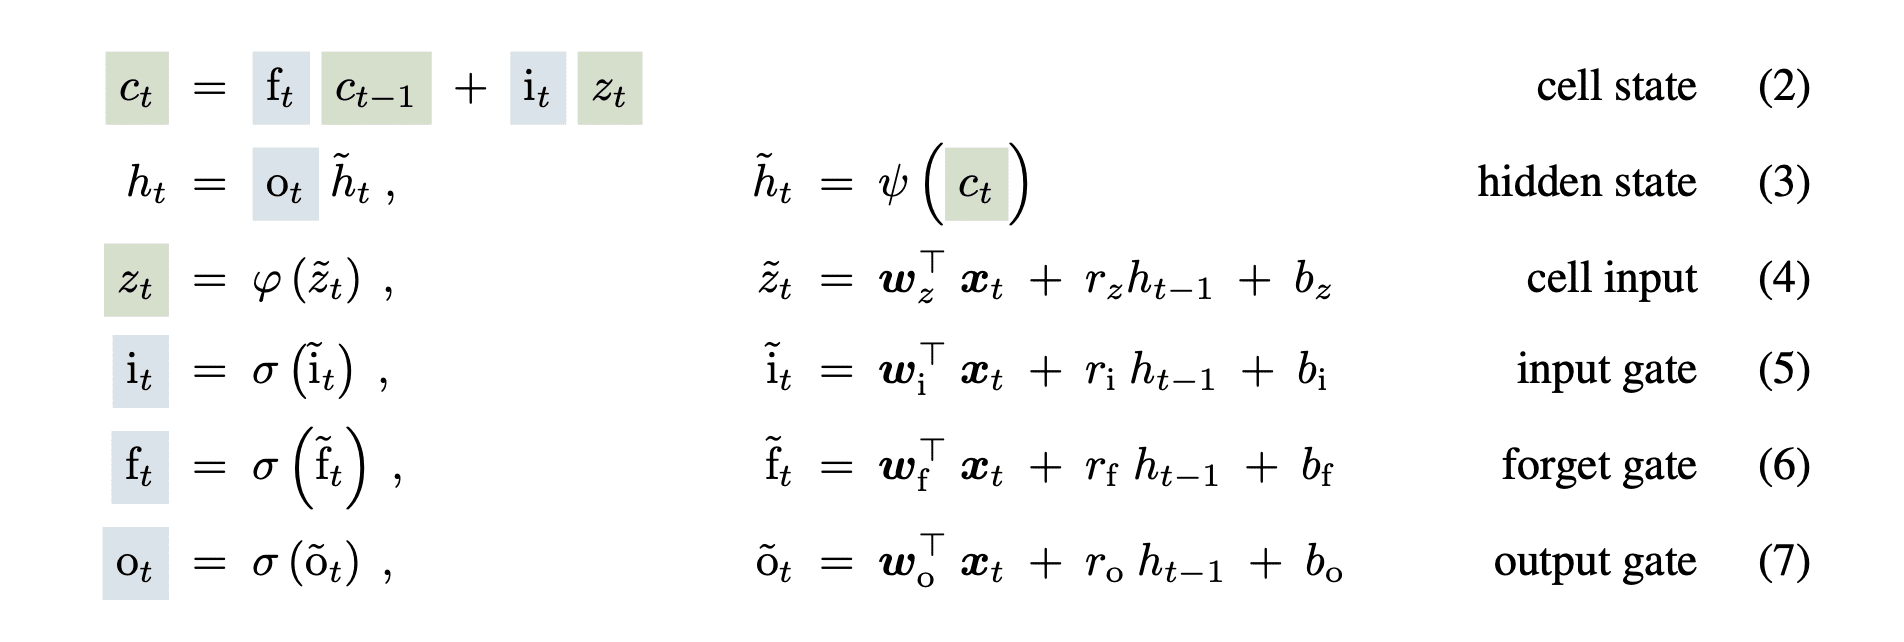 LSTM Equation